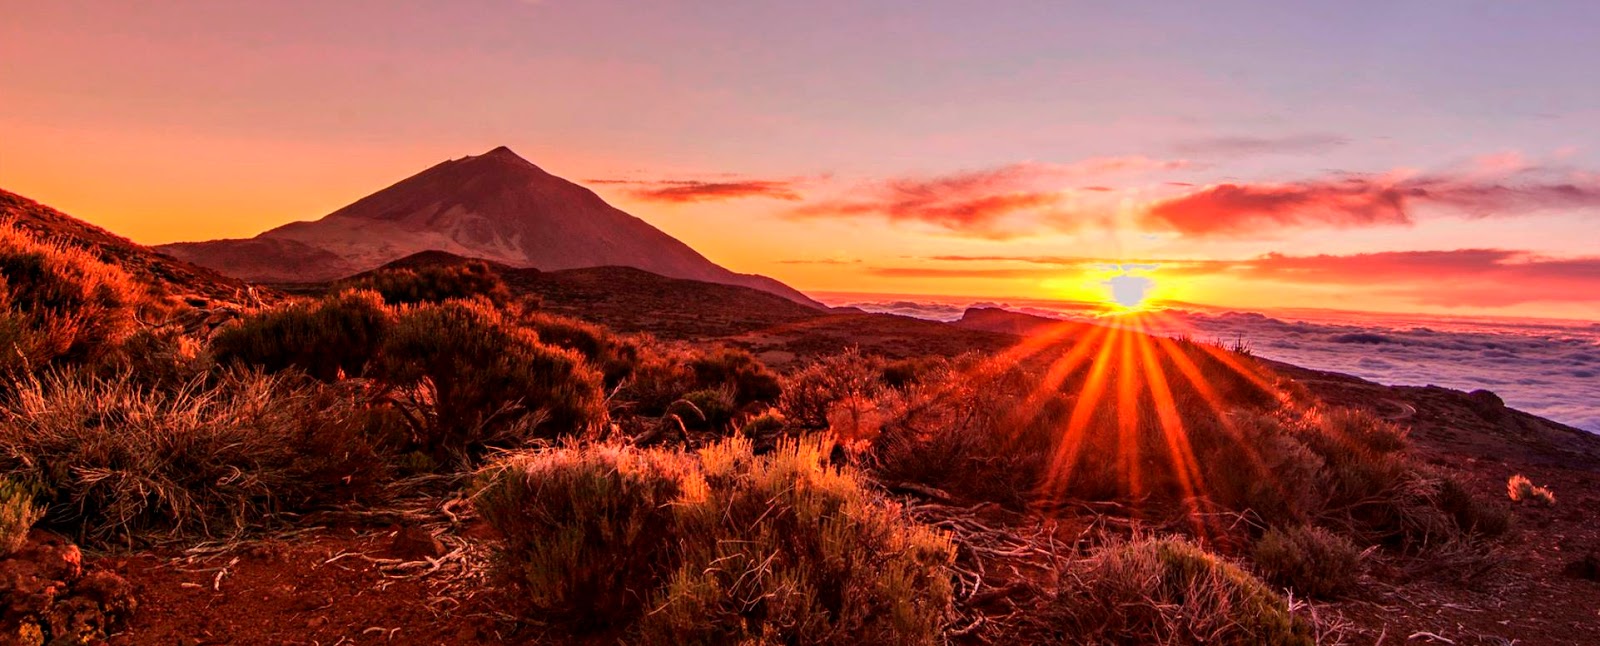 estoy de acuerdo con pila Como Isla de Tenerife Vívela: 10 Rutas por el Parque Nacional del Teide